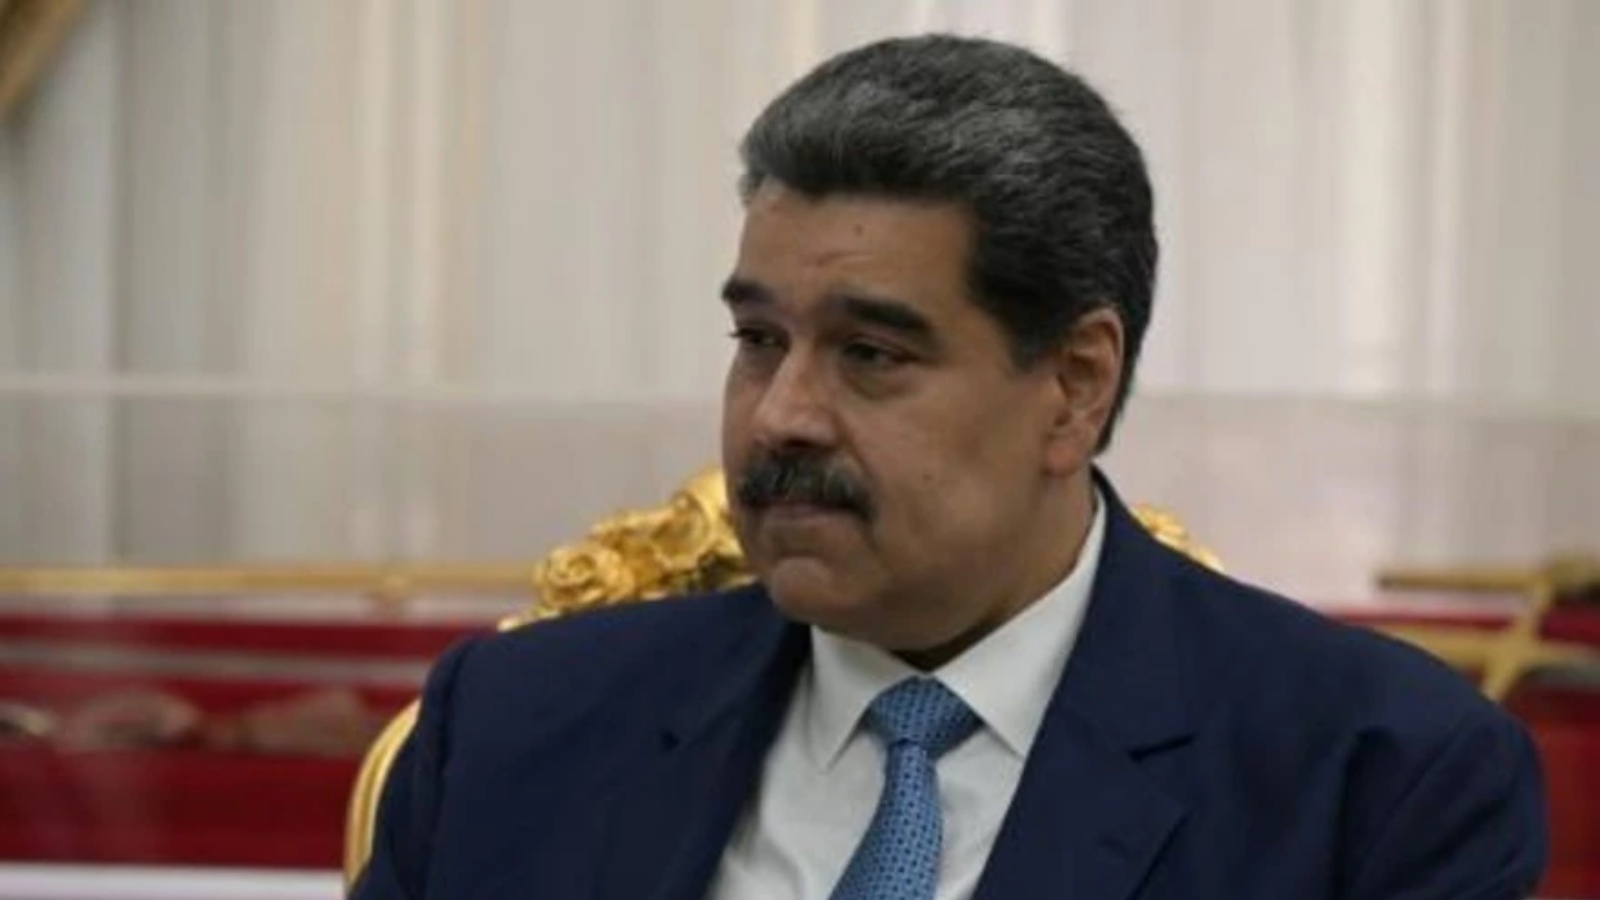 الرئيس الفنزويلي نيكولاس مادورو في القصر الرئاسي في كراكاس في 11 يوليو 2022 